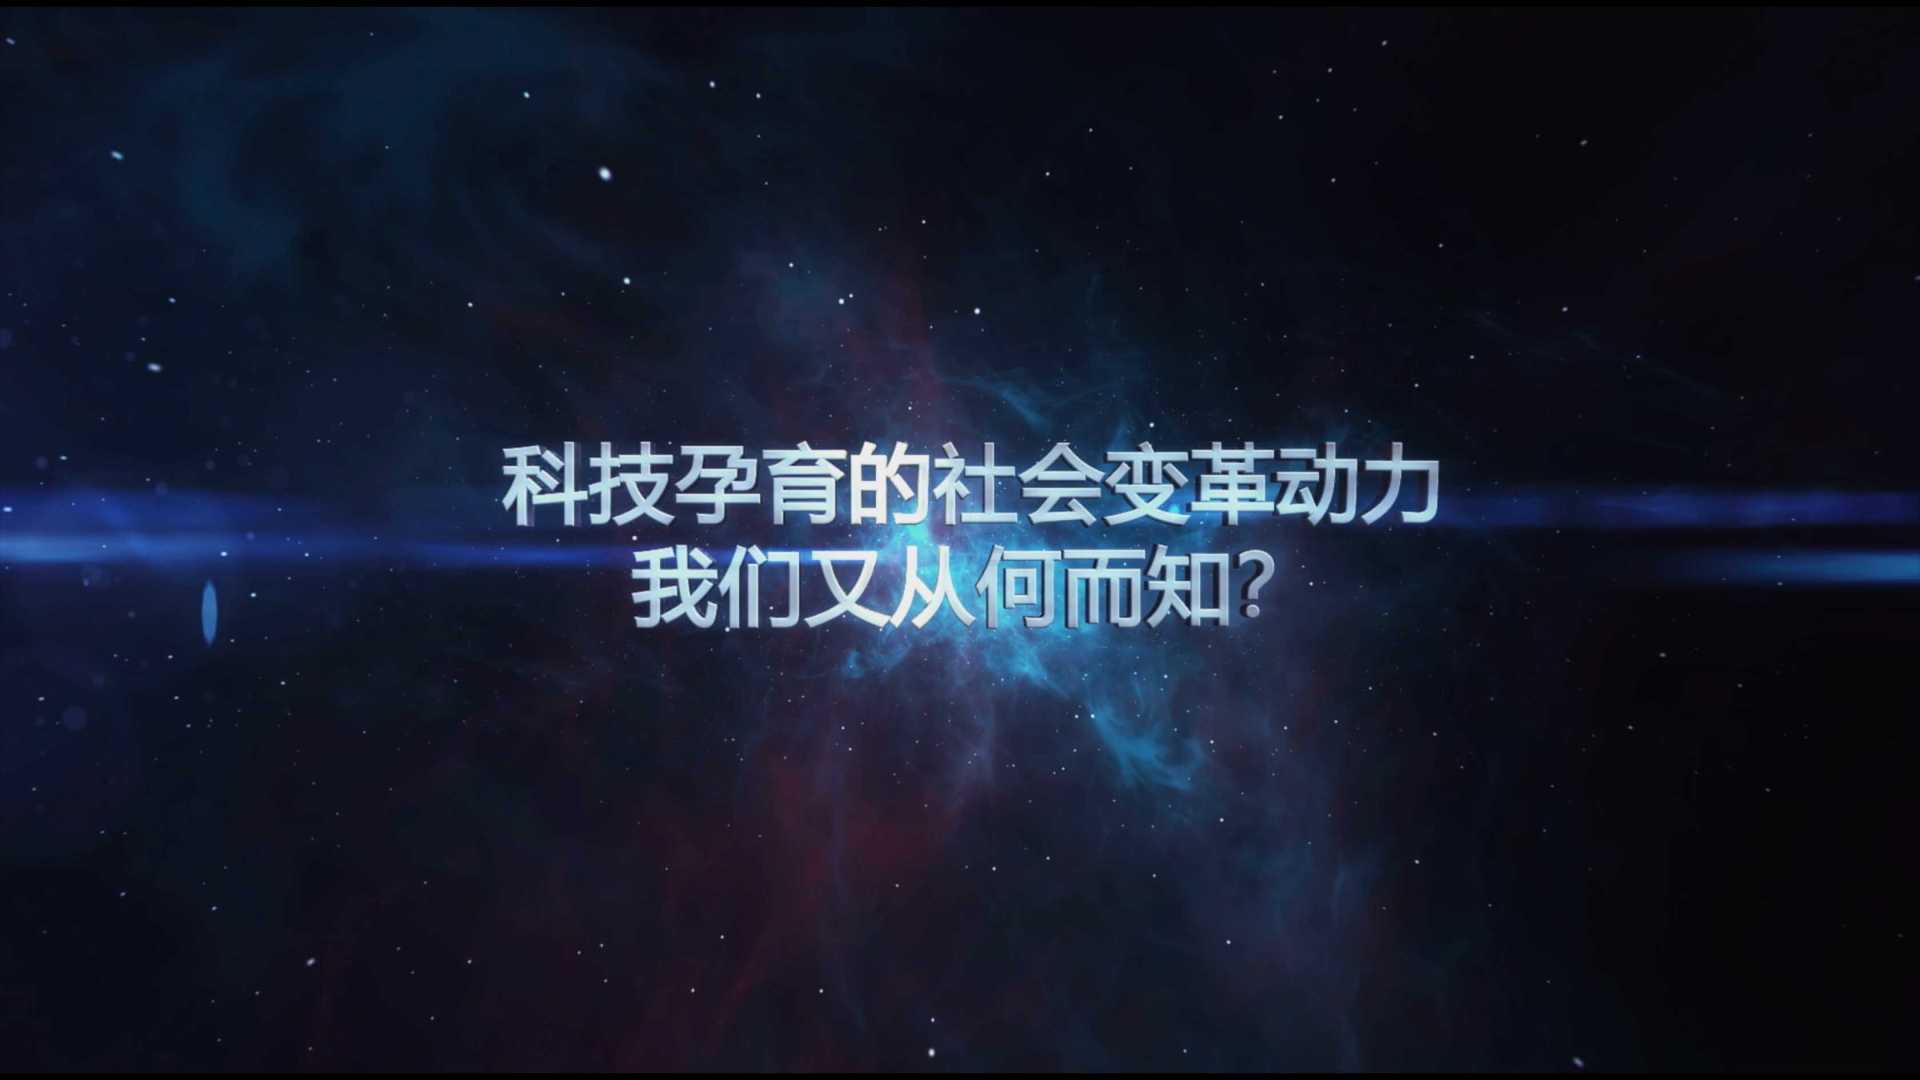 中国科协技术协会宣传片